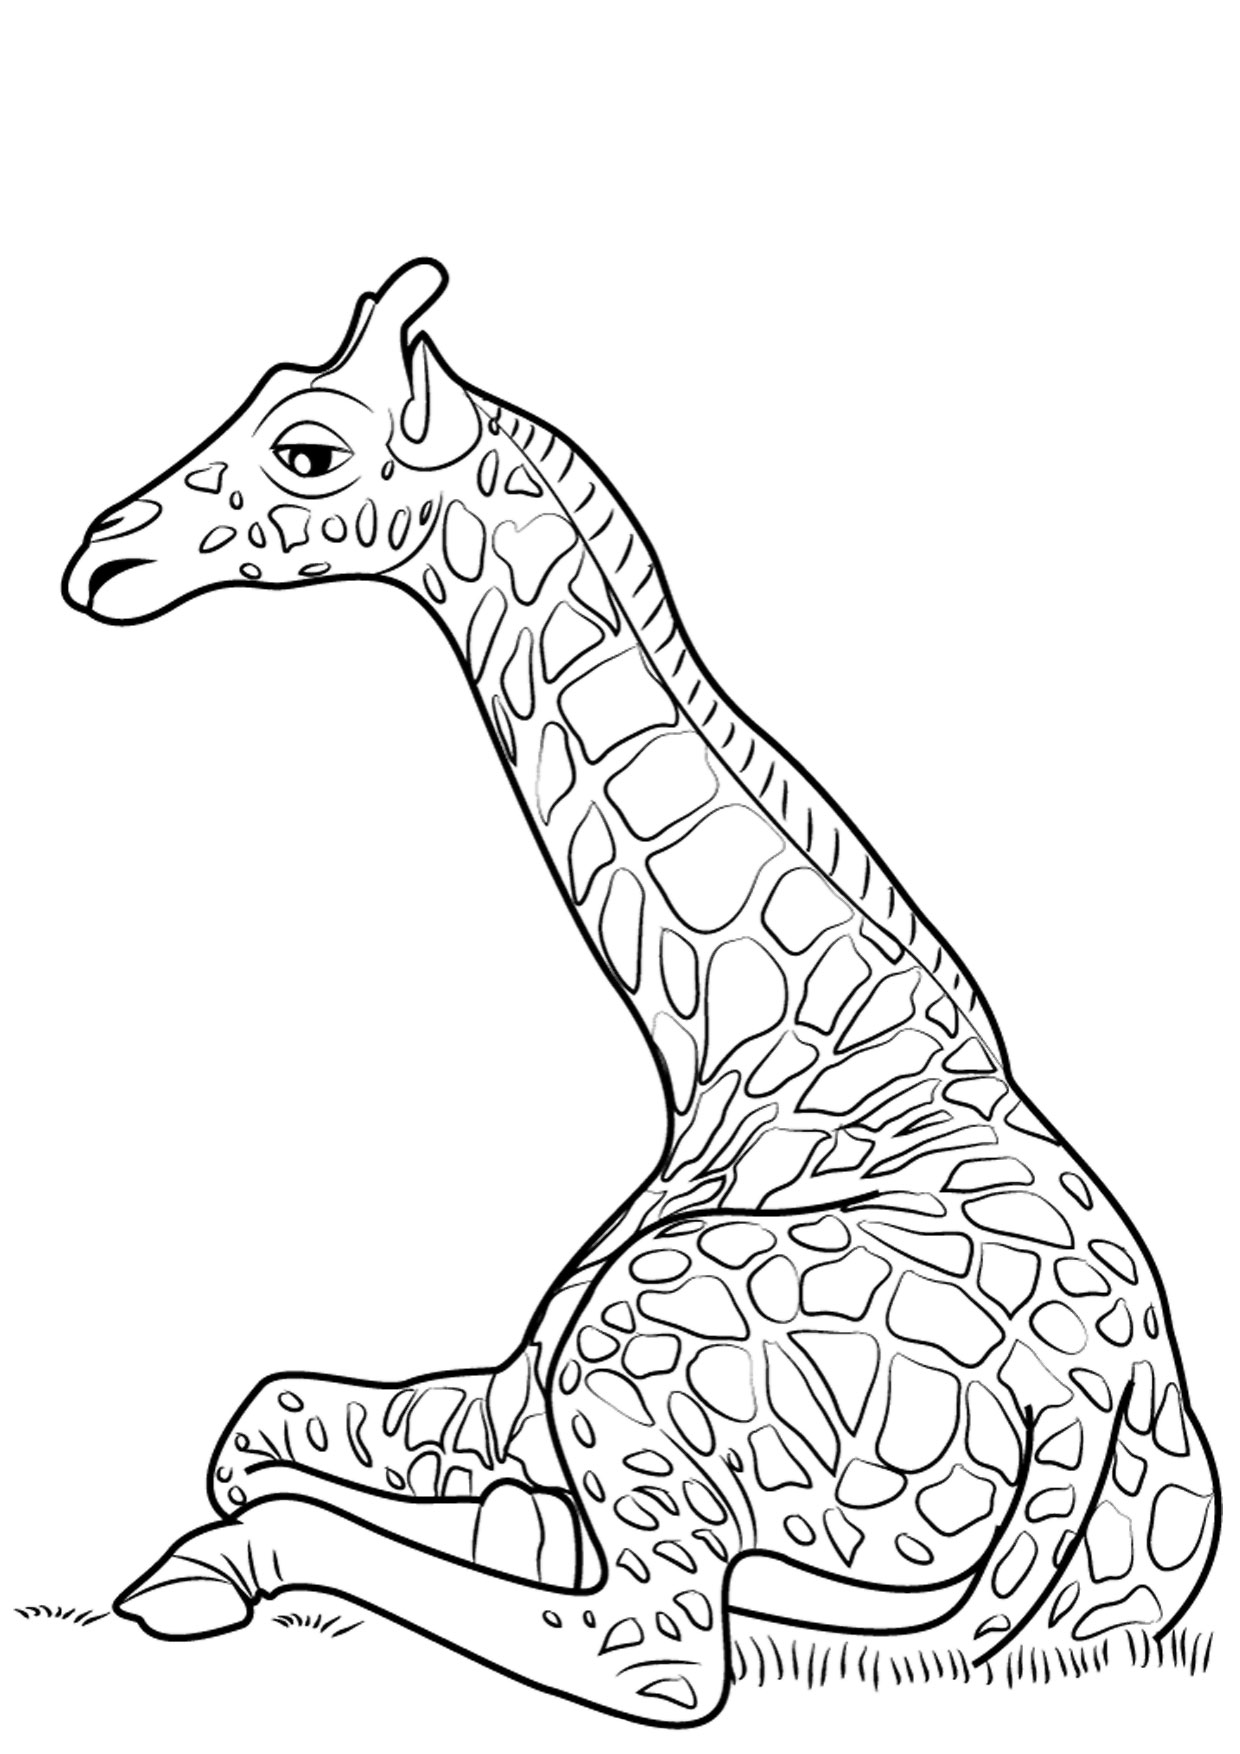 Disegno di giraffa 14